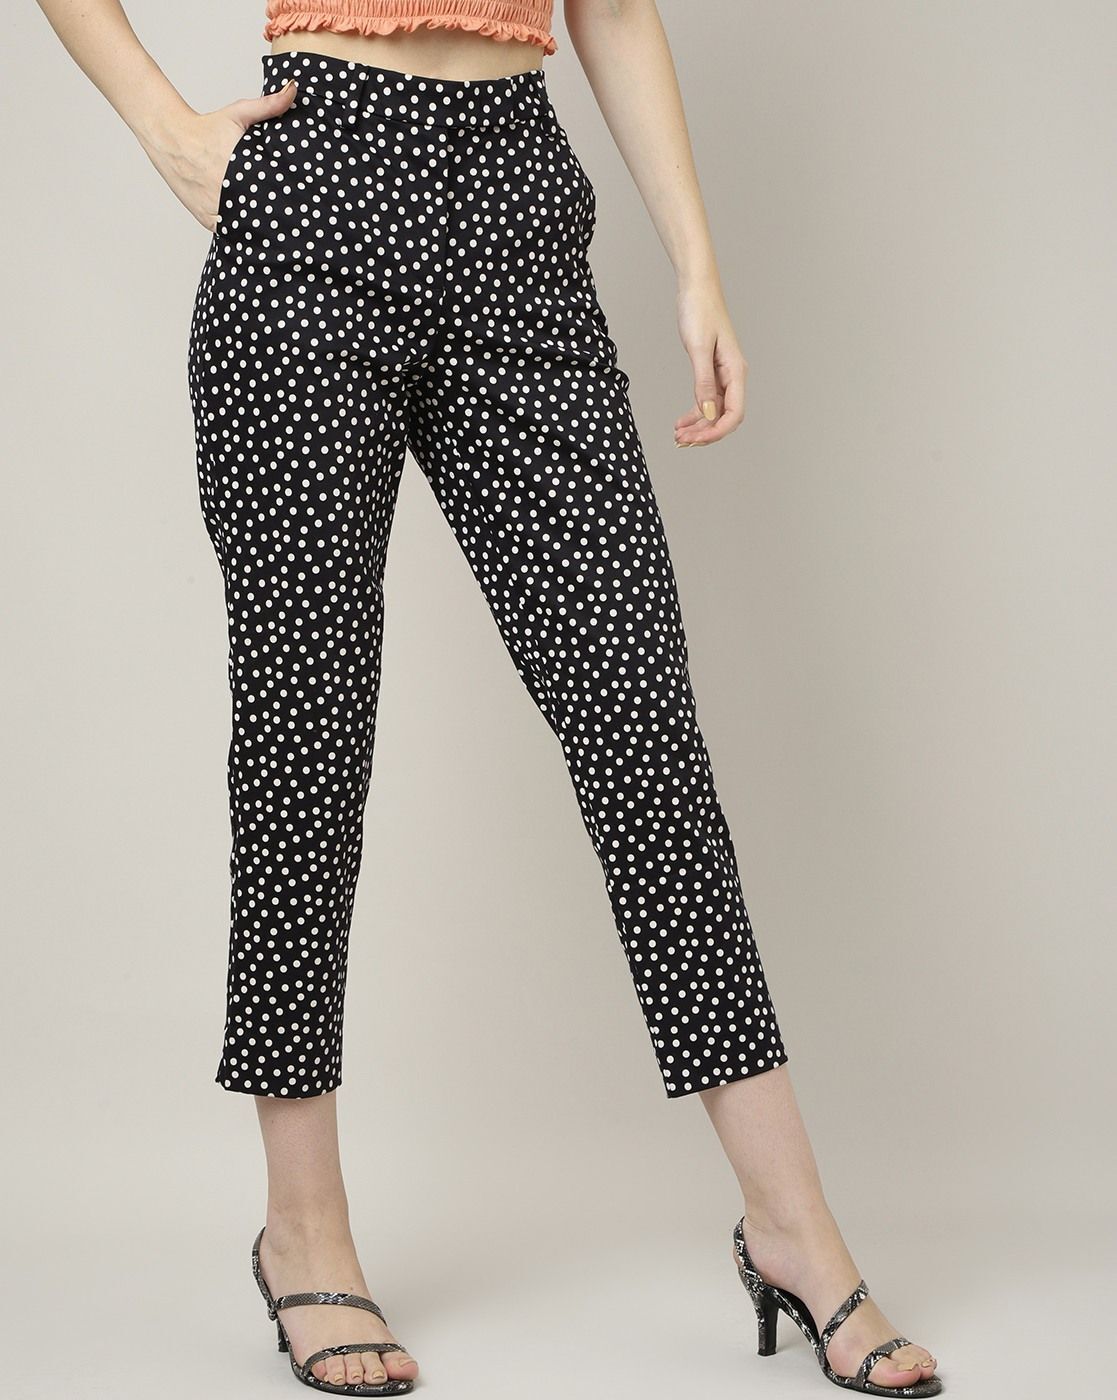 Polka Dot Pants for Women for sale | eBay